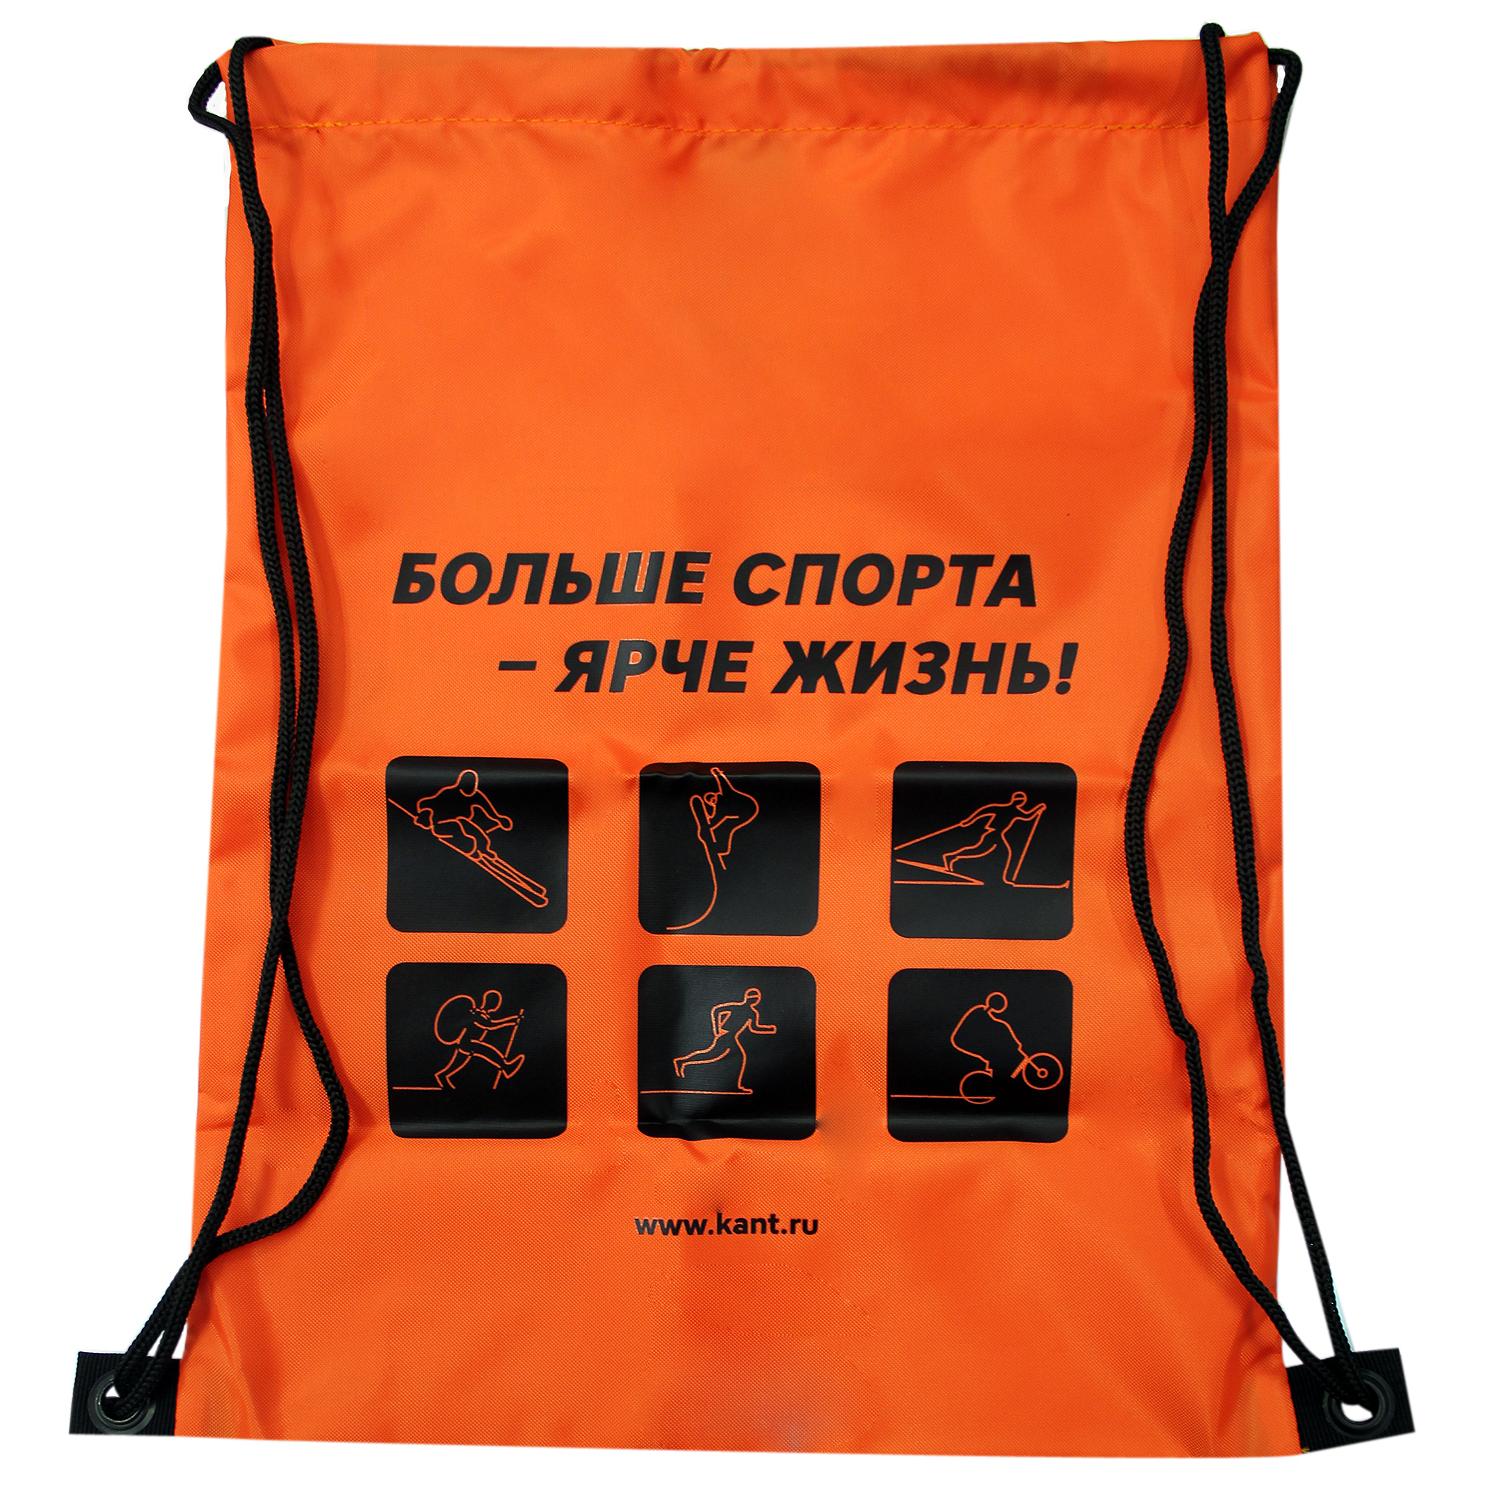 фото Сумка для сменки кант promo bag оранжевый/чёрный (б/р:one size)